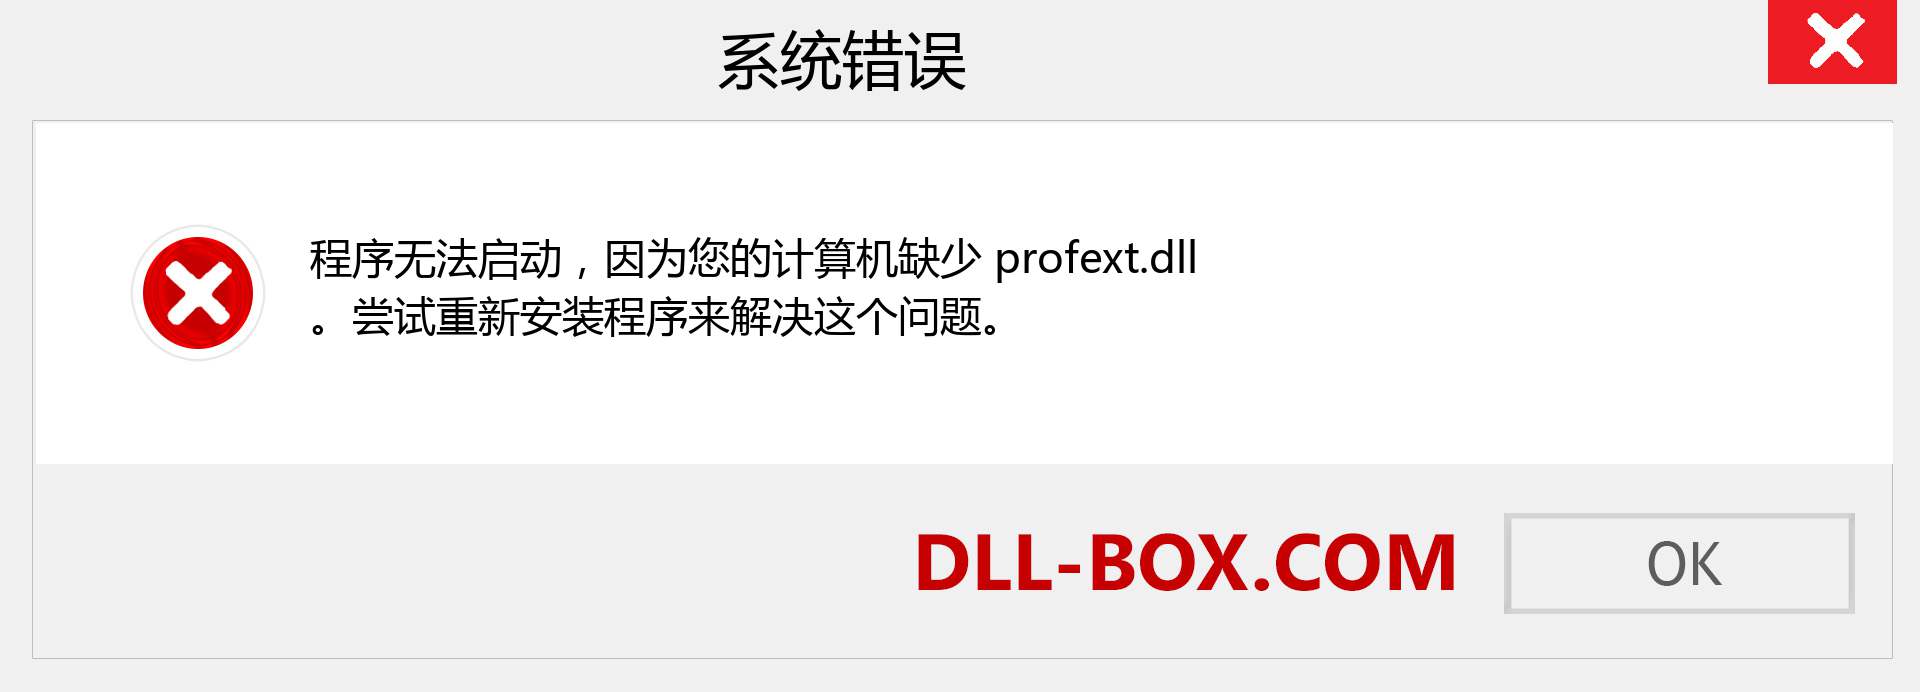 profext.dll 文件丢失？。 适用于 Windows 7、8、10 的下载 - 修复 Windows、照片、图像上的 profext dll 丢失错误